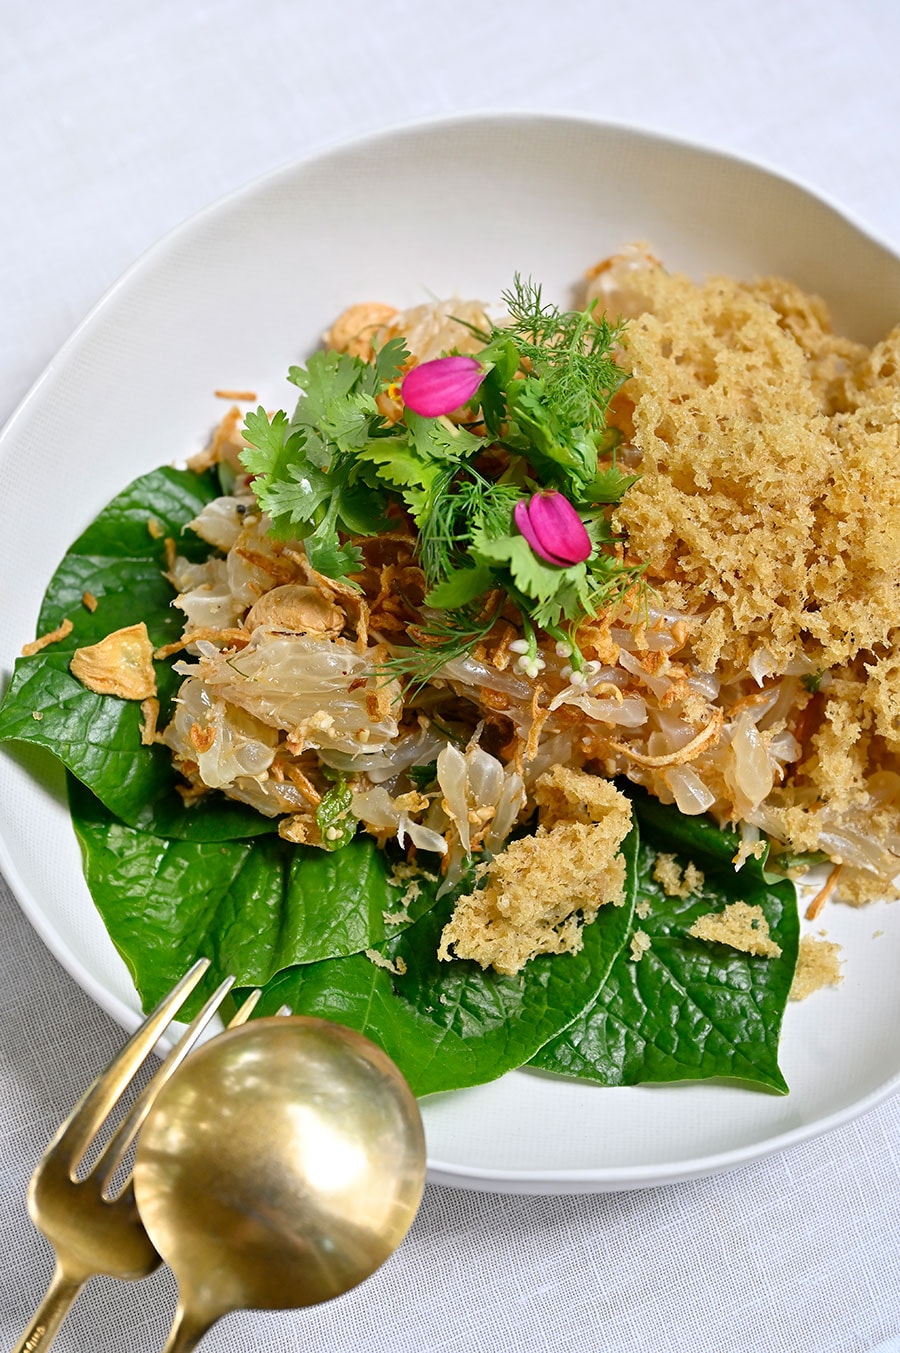 タイ料理「プラナコーン」で堪能できる上質な一皿“揚げ魚とポメロのサラダ” 320タイバーツ。